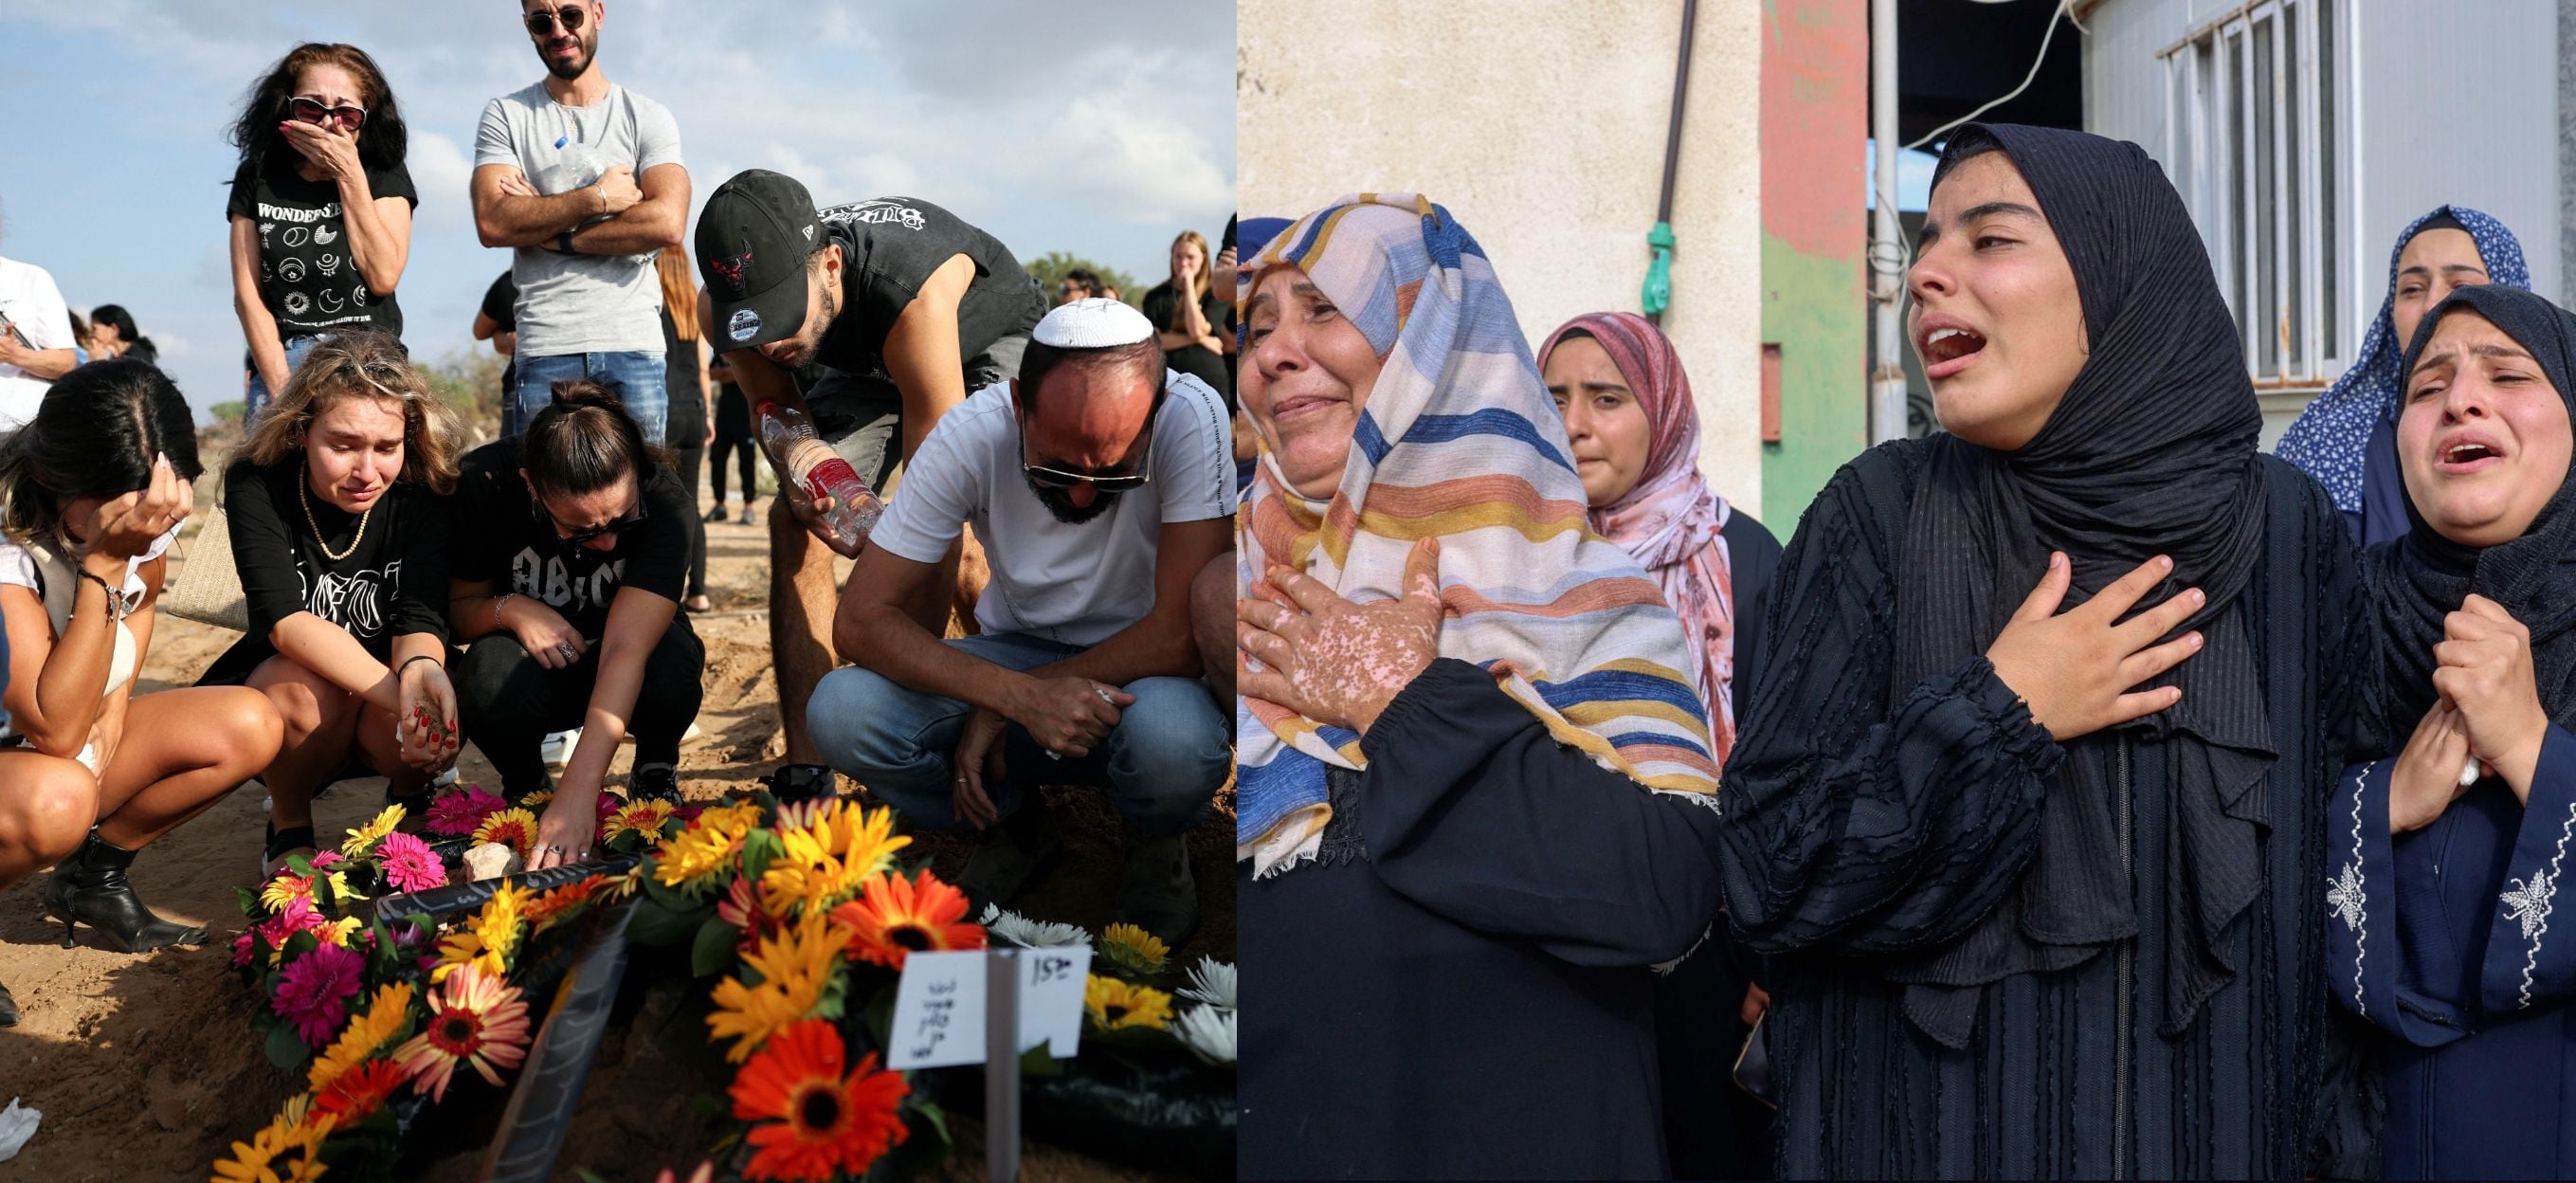 10일 이스라엘 남부 아스글론에서 열린 장례식에서 하마스 무장세력의 공격으로 최소 260명이 사망한 축제에 참석하던 중 사망한 희생자의 무덤에서 사람들이 애도(왼쪽)하는 가운데 가자 지구 남부 칸 유니스에서는 밤새 이스라엘의 포격으로 사망한 팔레스타인 희생자 장례식에서 팔레스타인 사람들이 슬픔에 빠져있다. /로이터 AFP 연합뉴스